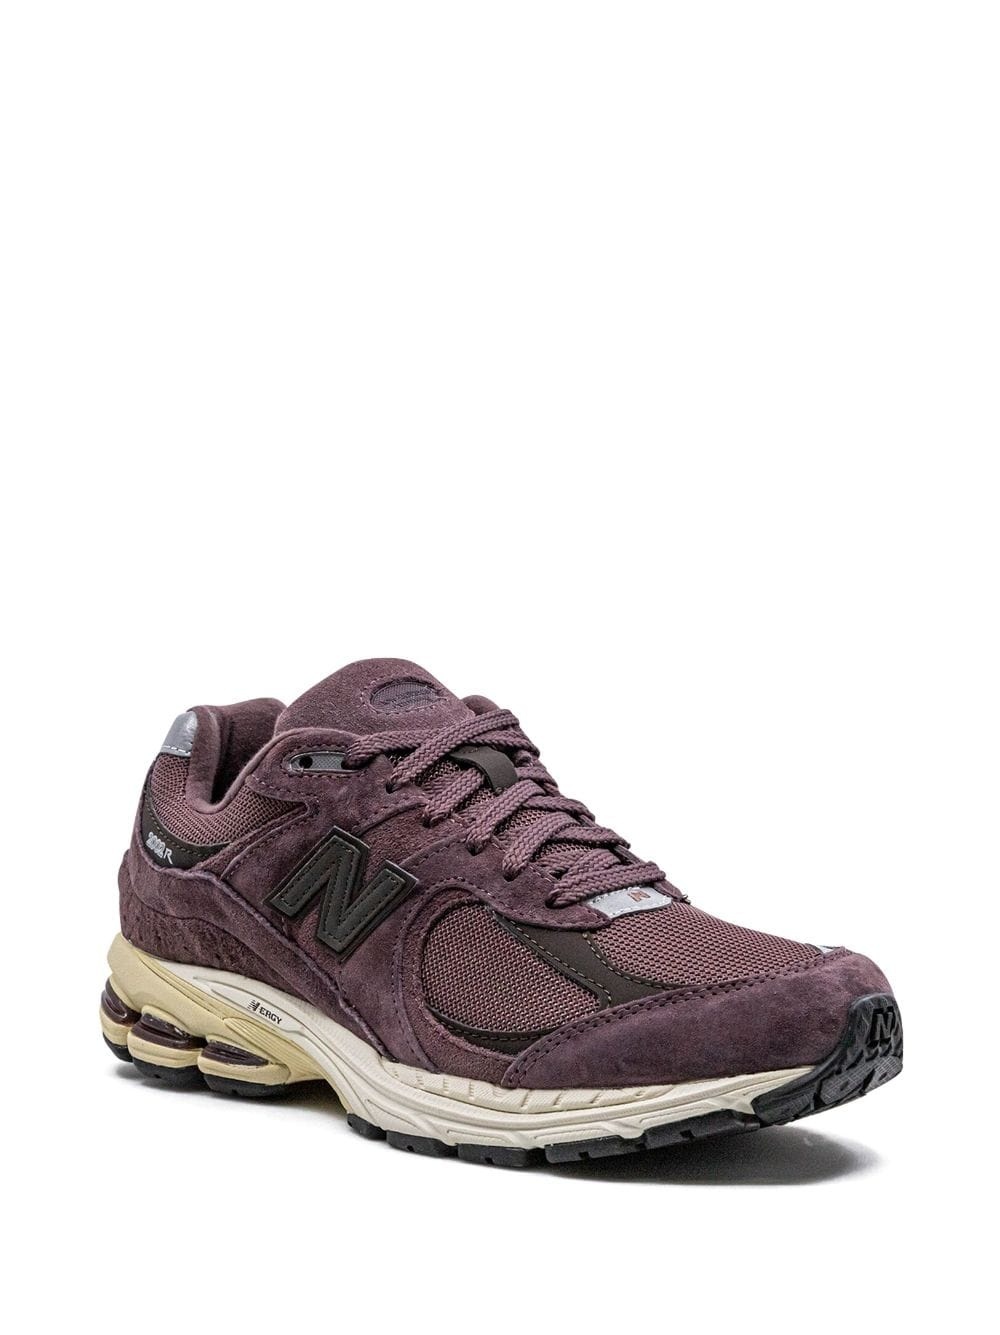 2002R "Dark Grape" sneakers - 2